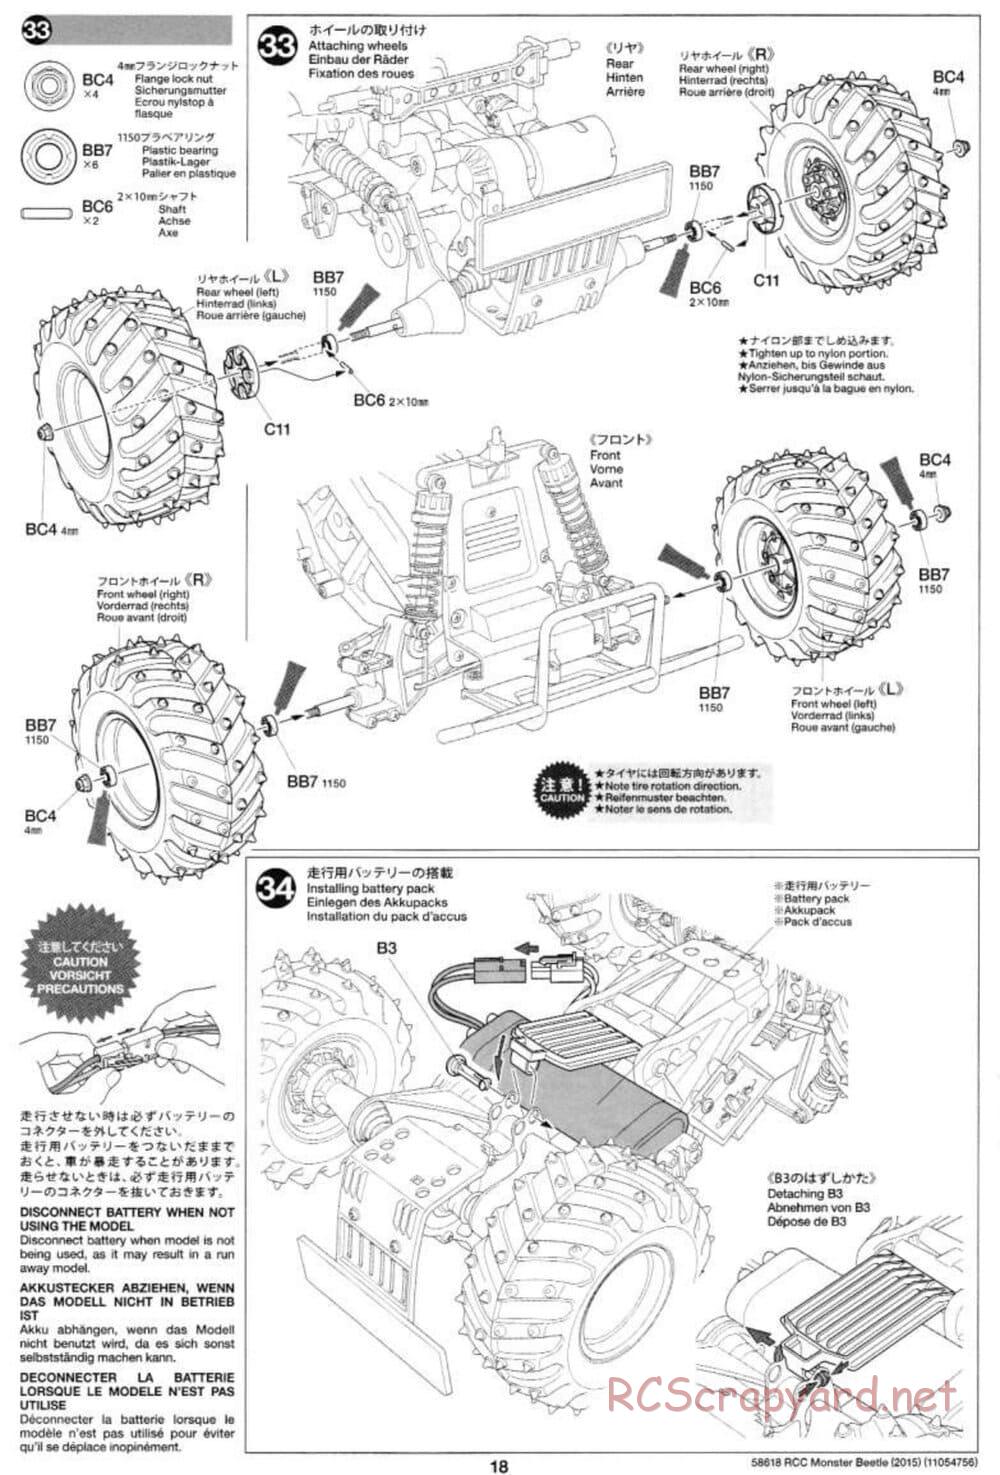 Tamiya - Monster Beetle 2015 - ORV Chassis - Manual - Page 18